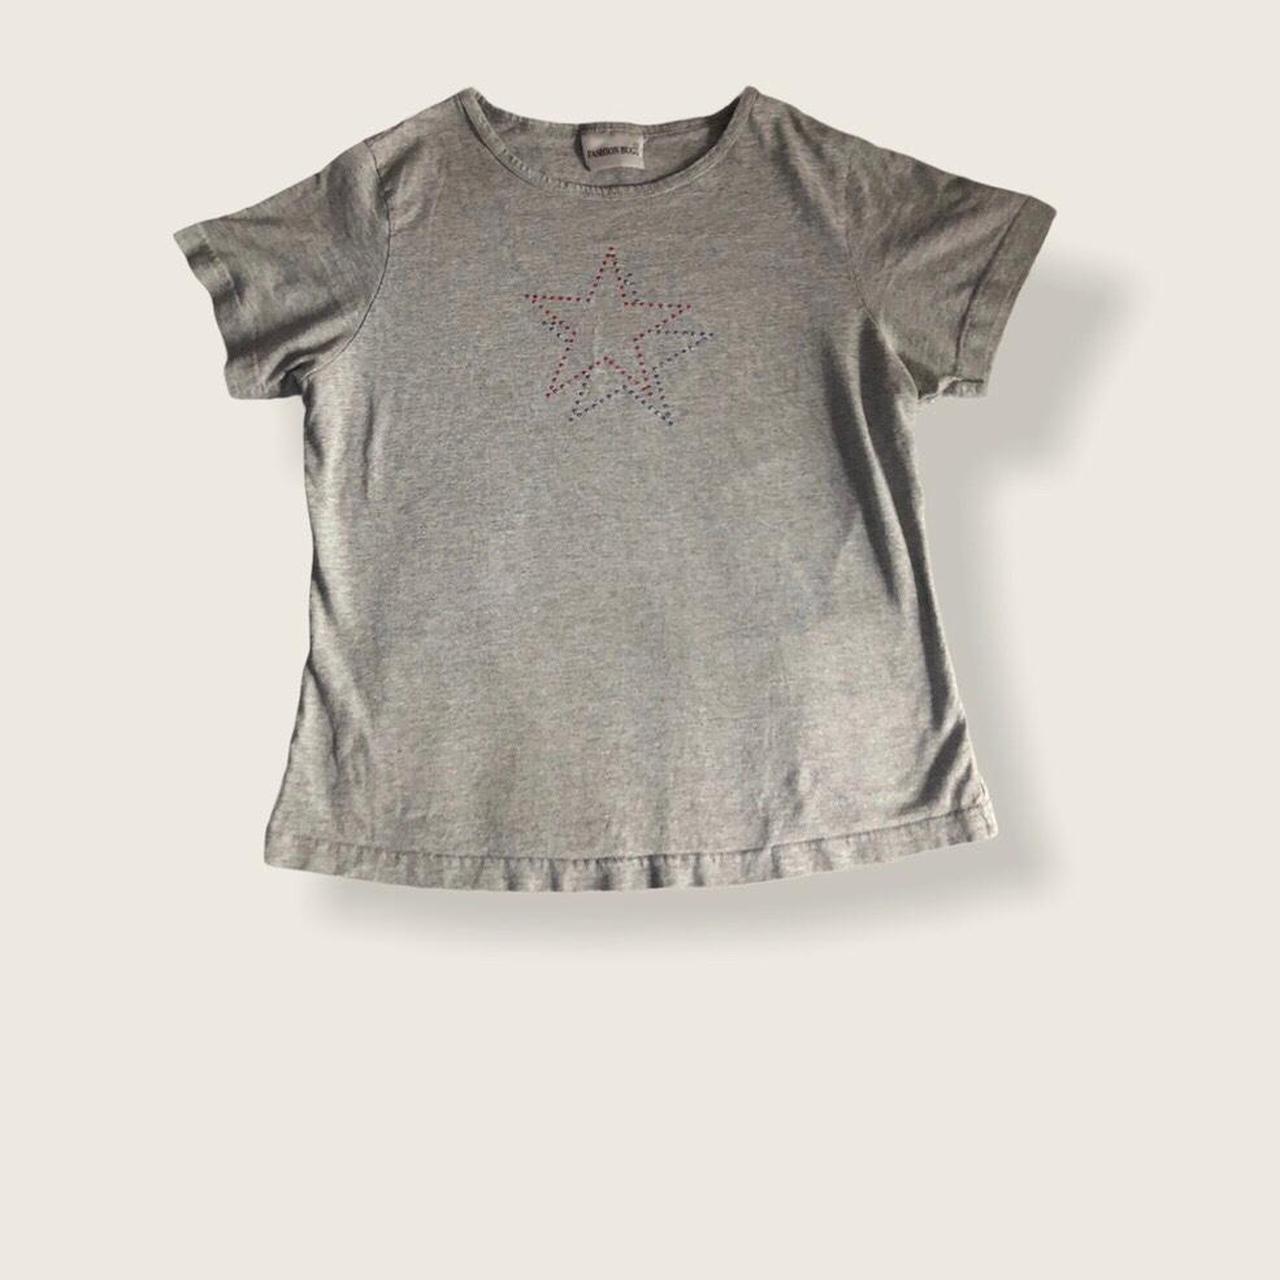 Product Image 1 - fashion bug shirt, gray with